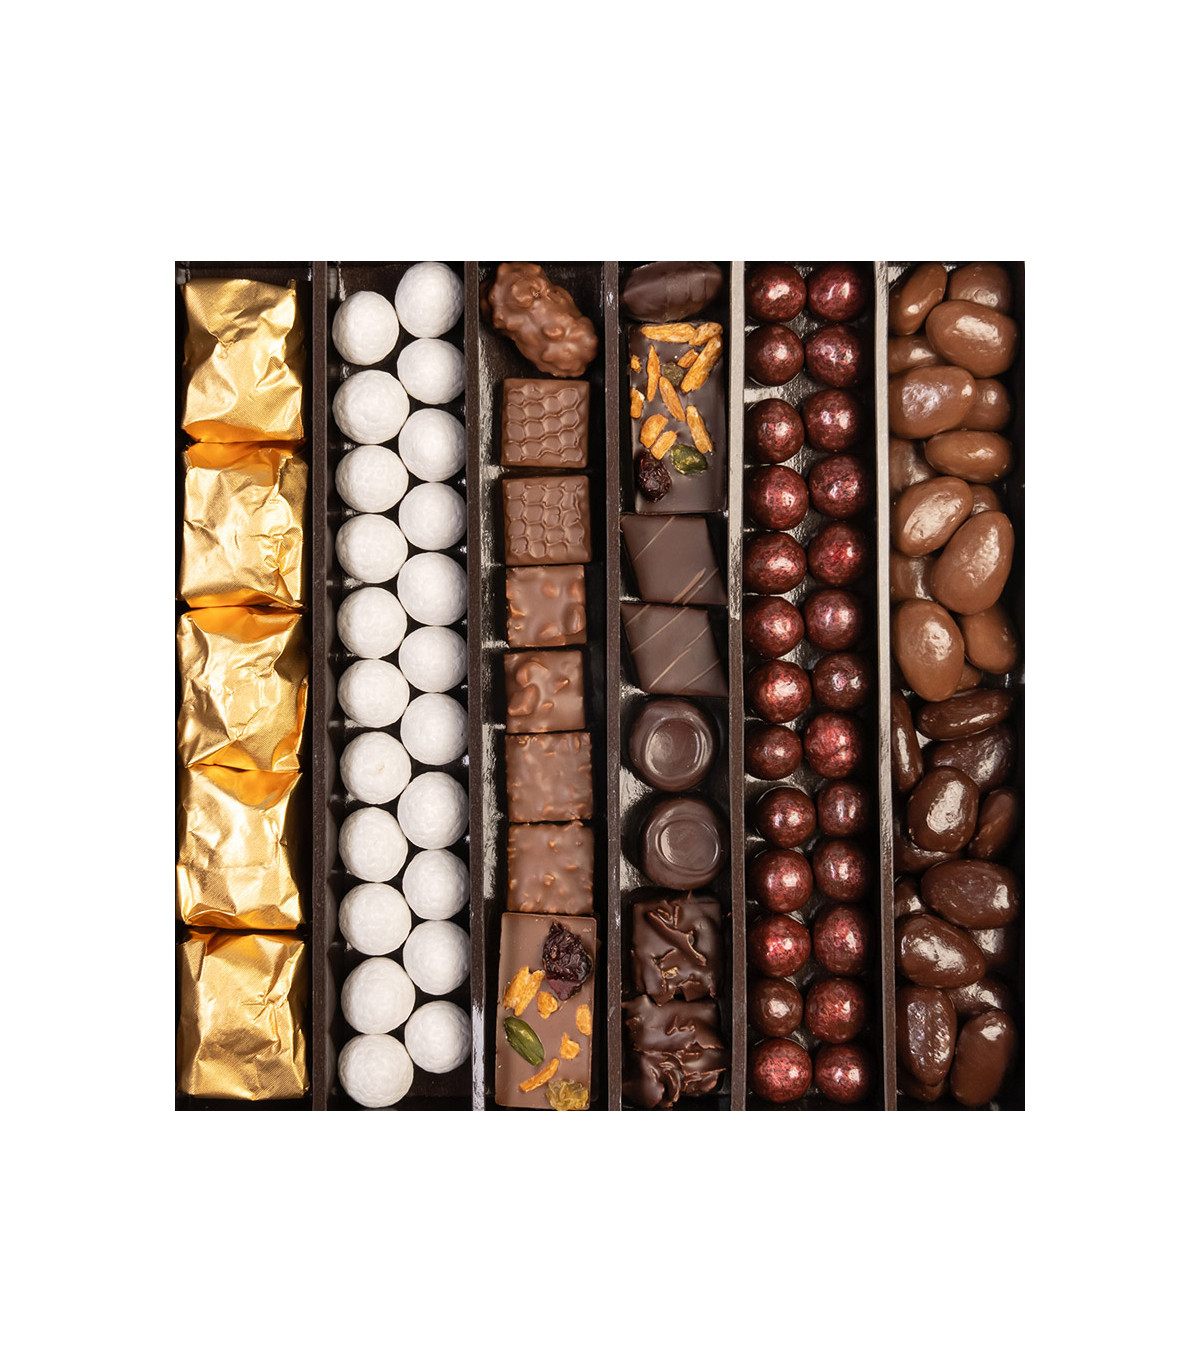 Chocolat de noël personnalisé - Cadeau de noël D'lys couleurs